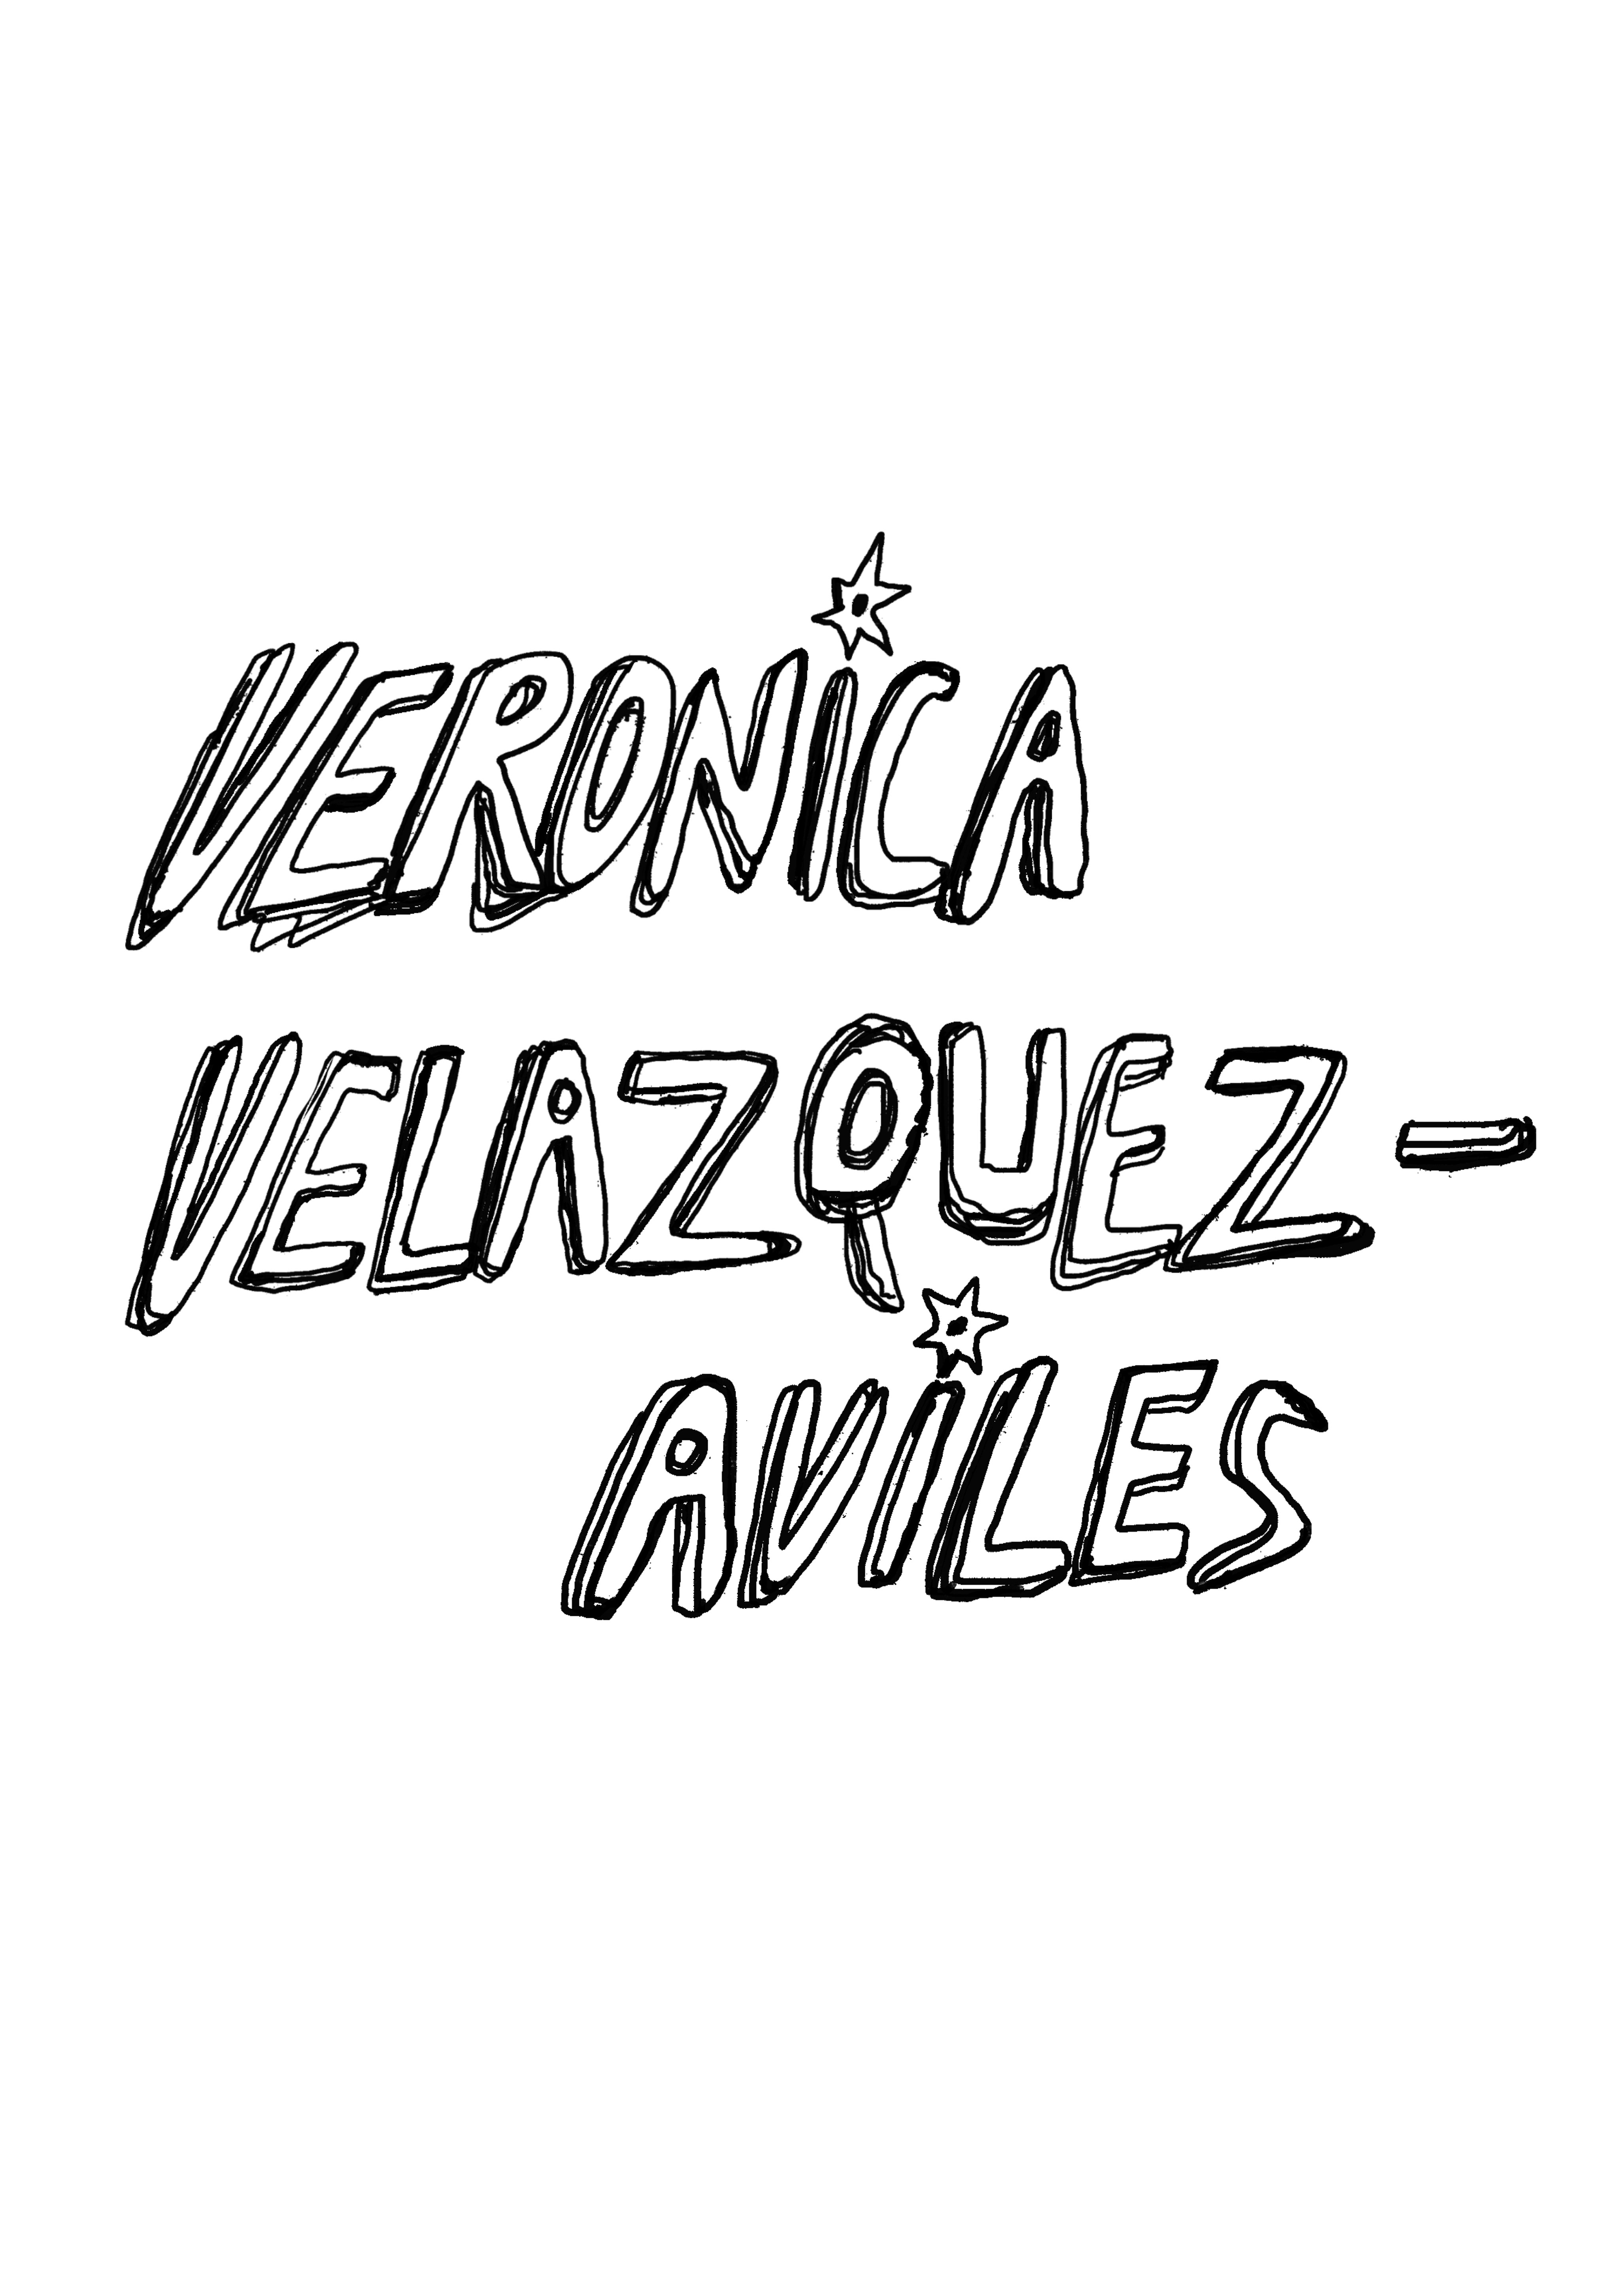 Veronica Velazquez-Aviles